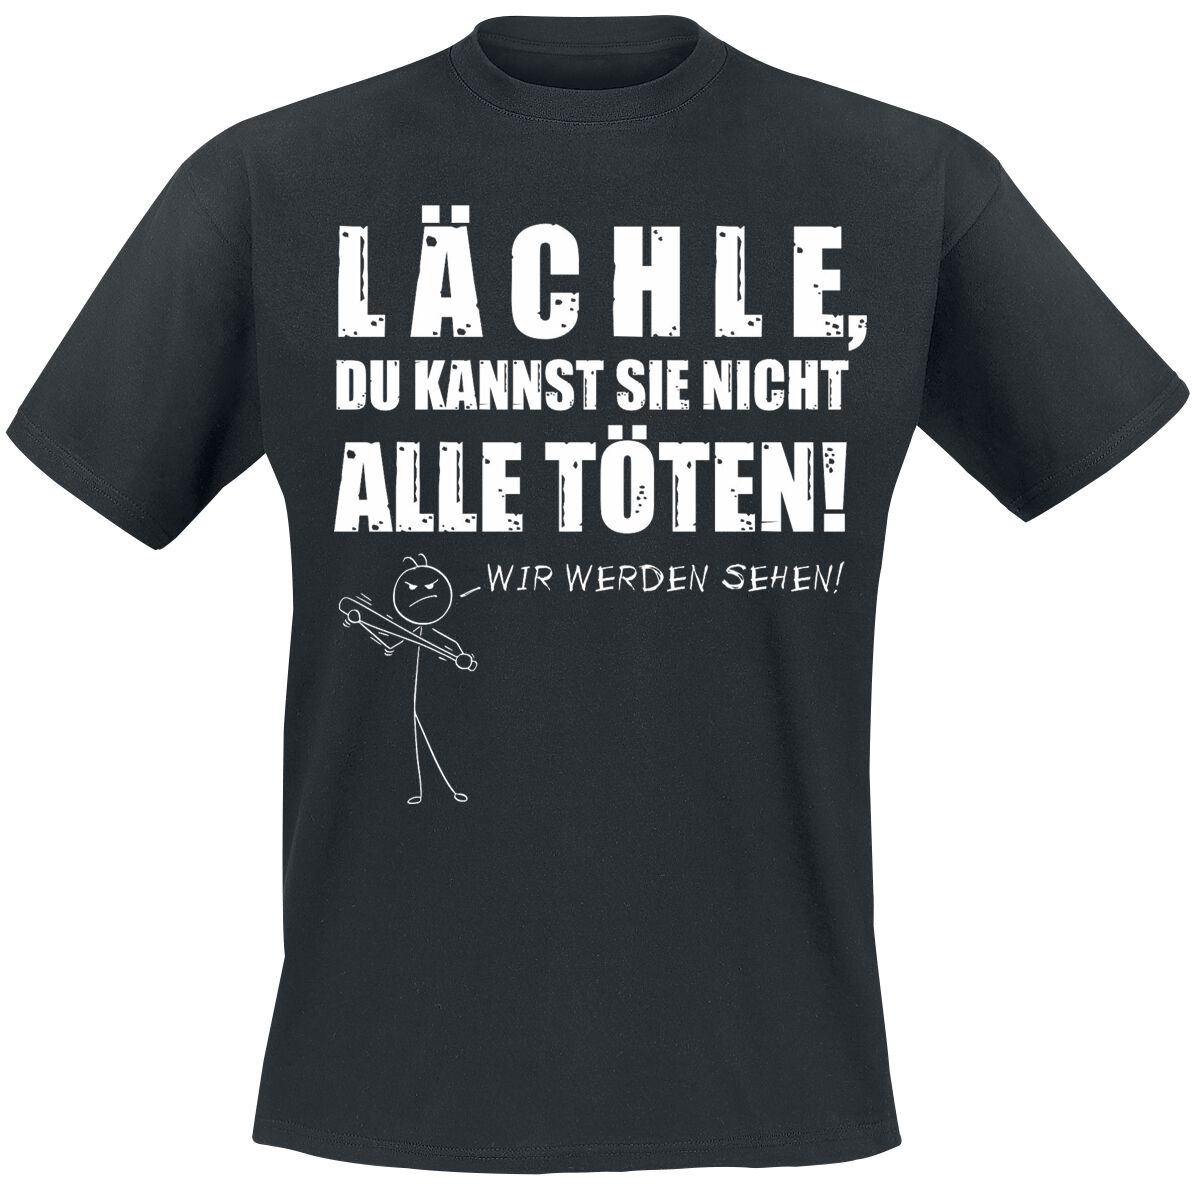 Sprüche T-Shirt - Lächle - XL bis 3XL - für Männer - Größe XXL - schwarz